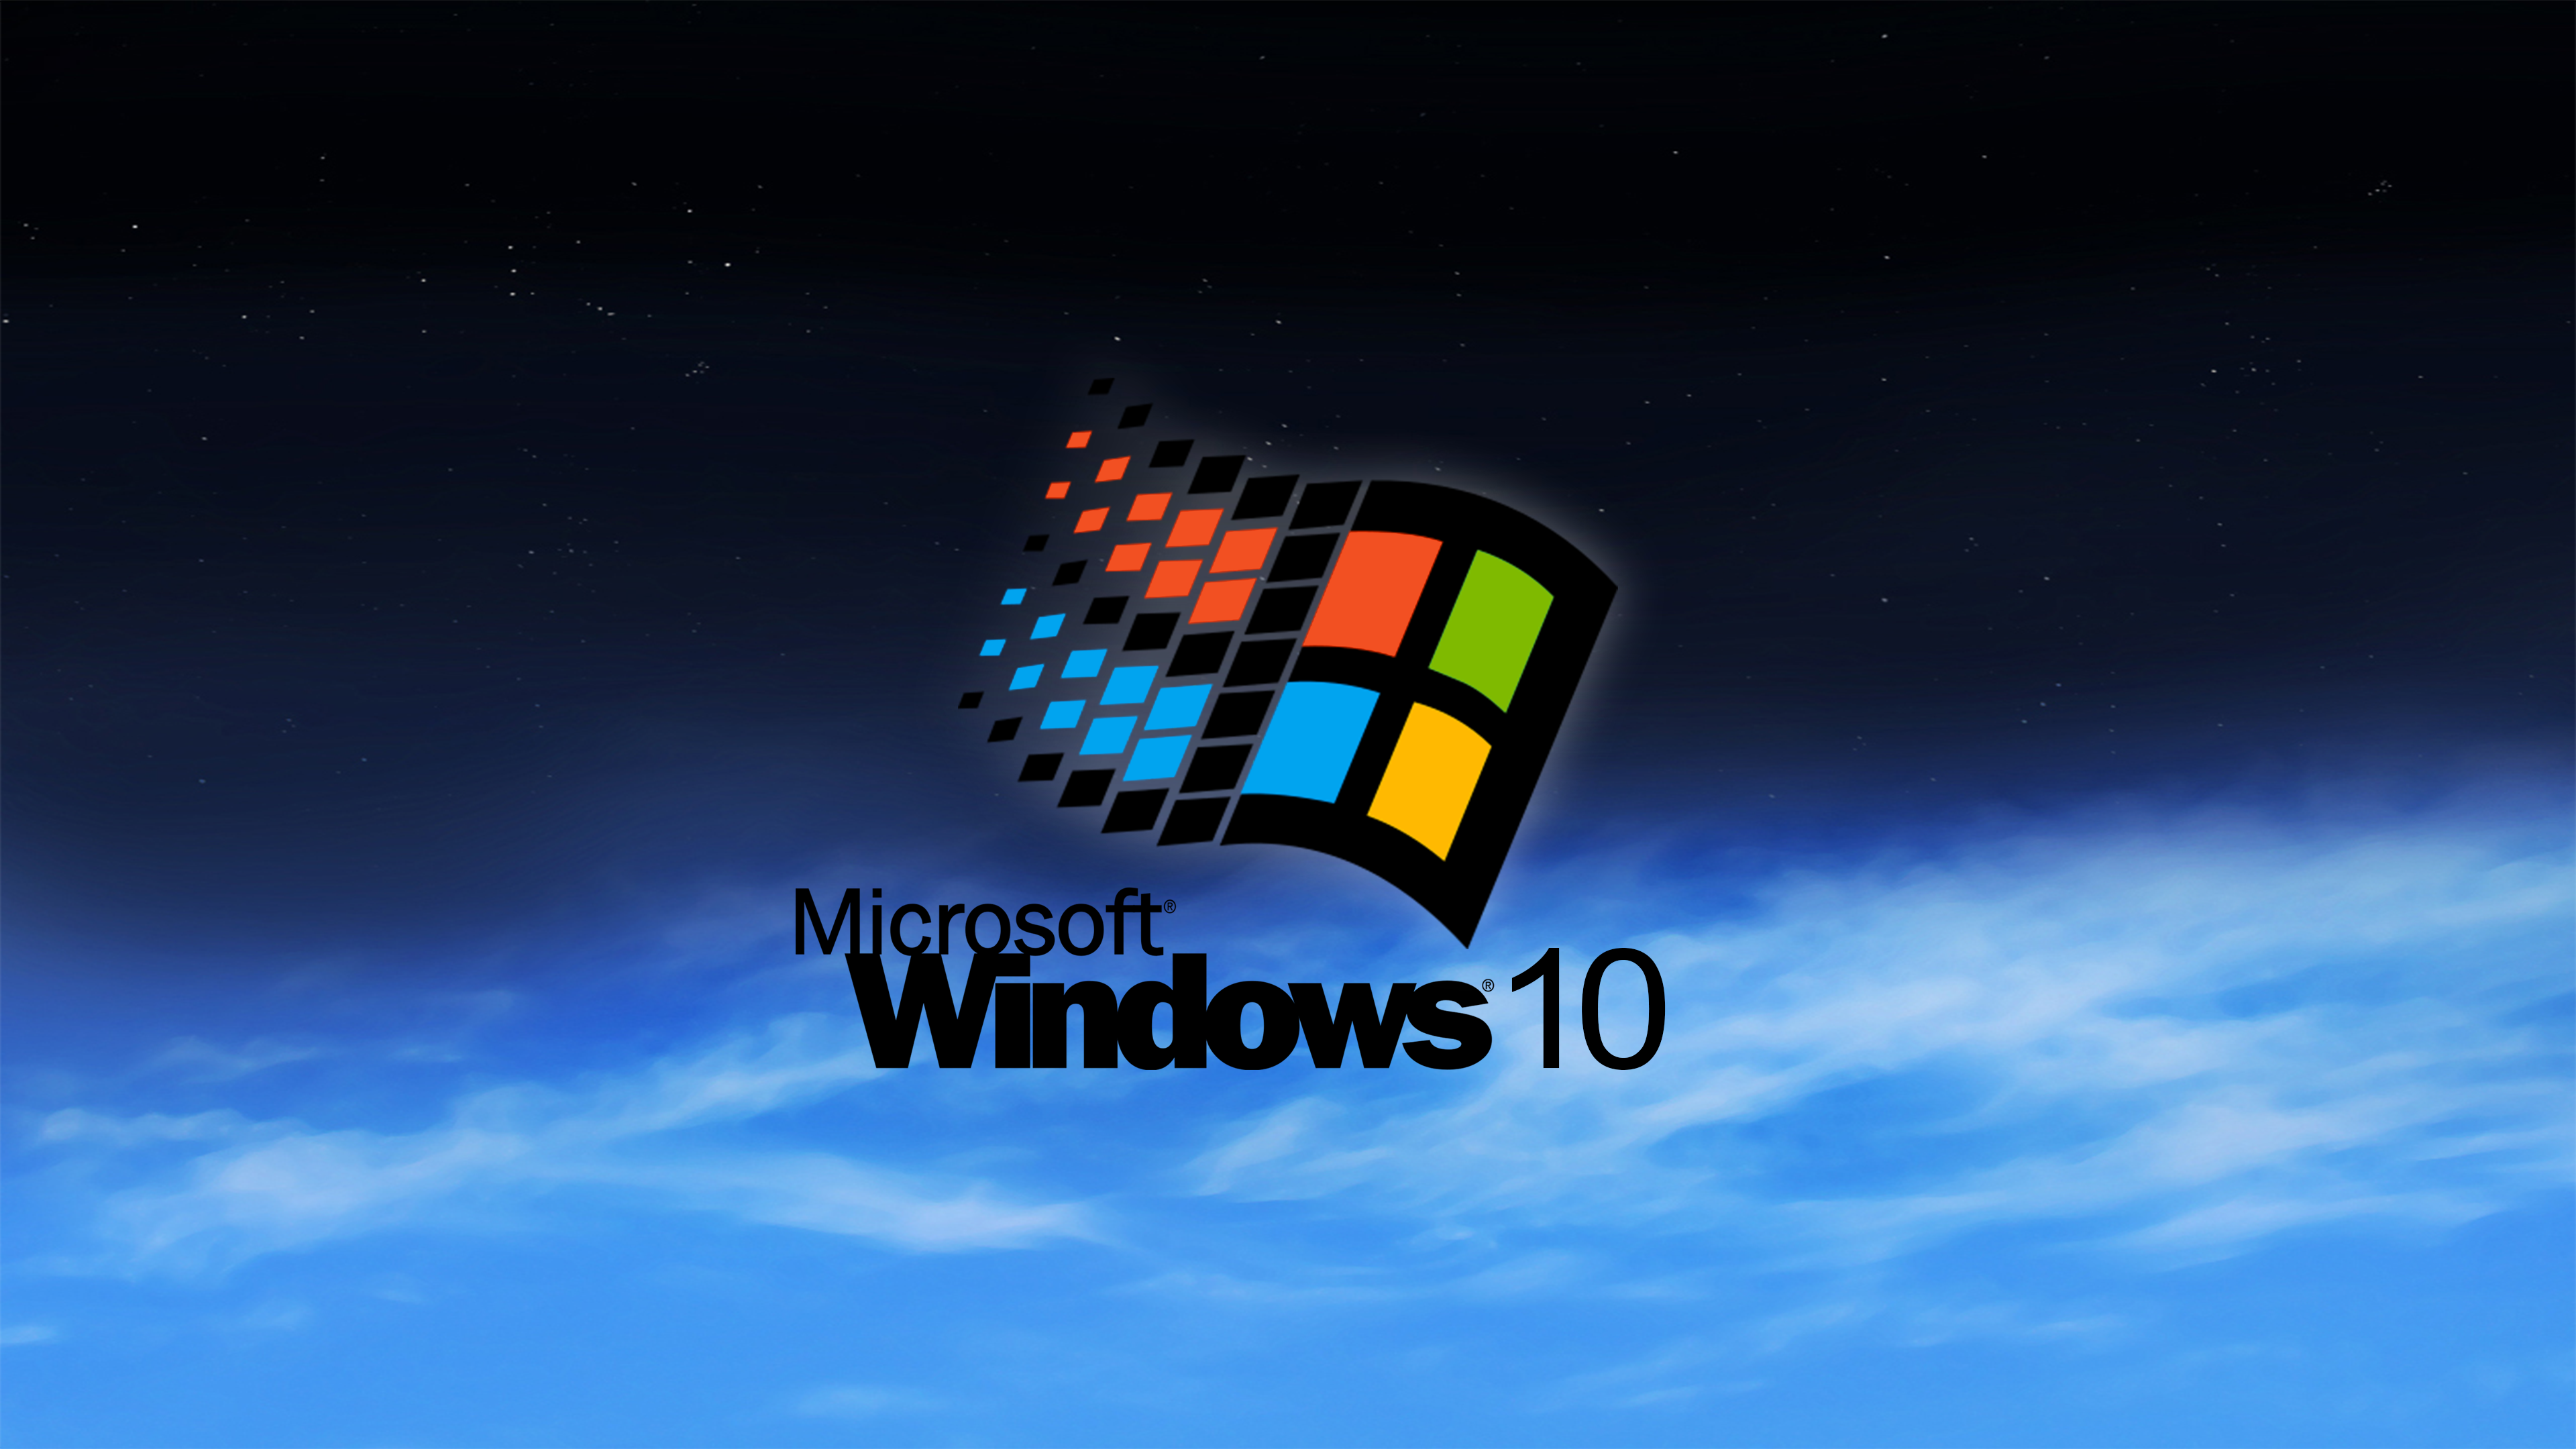 윈도우 95 벽지,운영 체제,폰트,루빅스 큐브,하늘,제도법